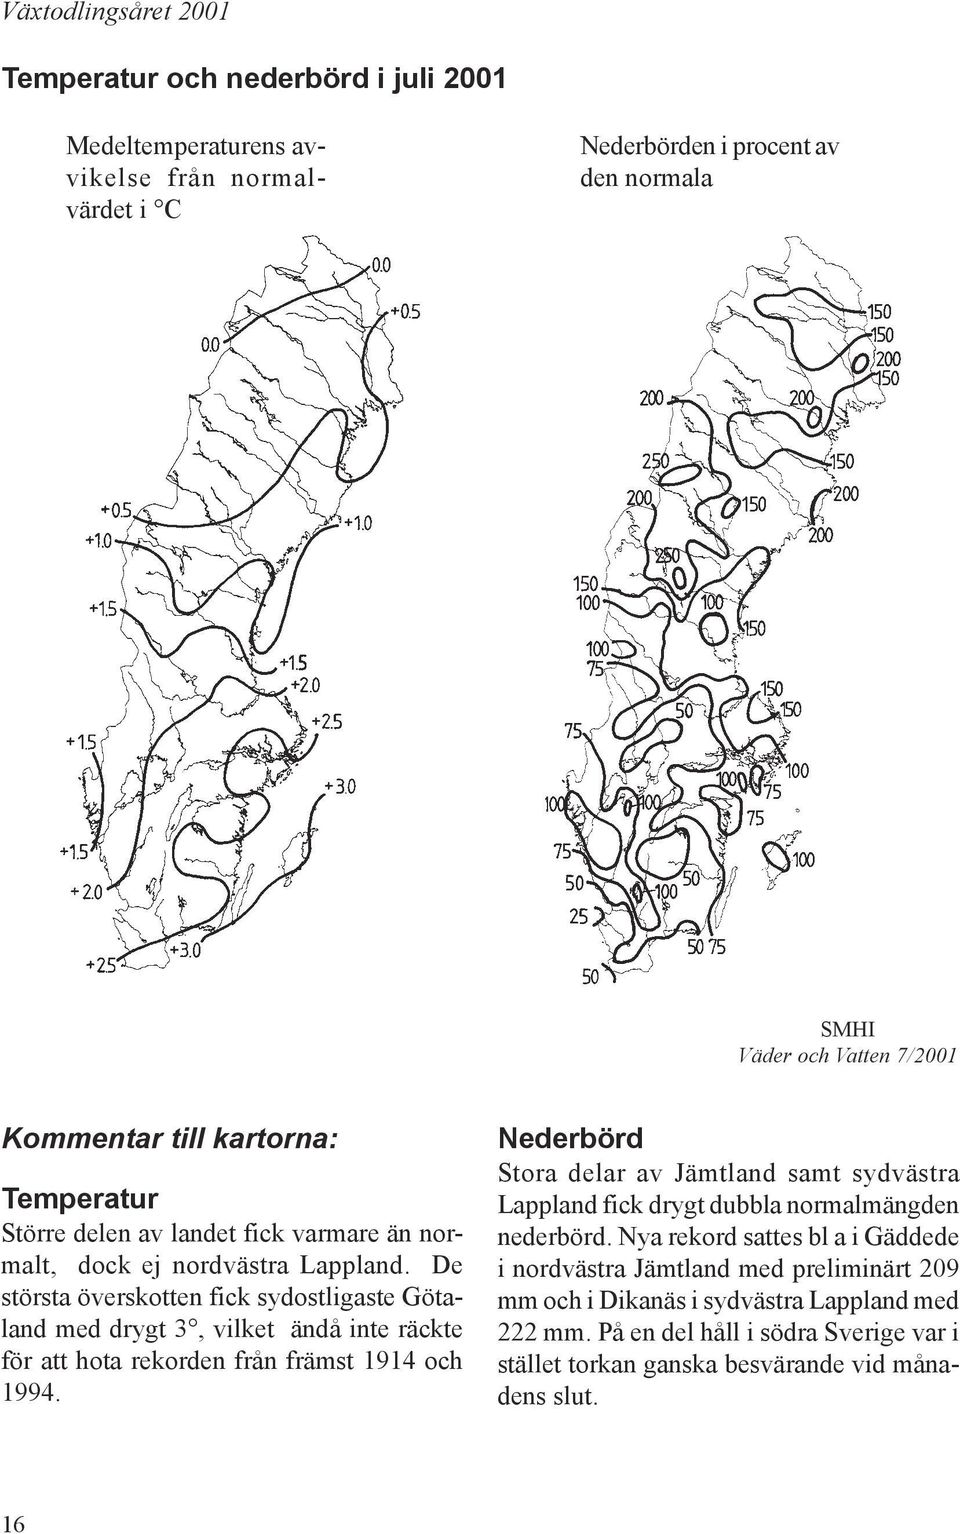 Stora delar av Jämtland samt sydvästra Lappland fick drygt dubbla normalmängden nederbörd.